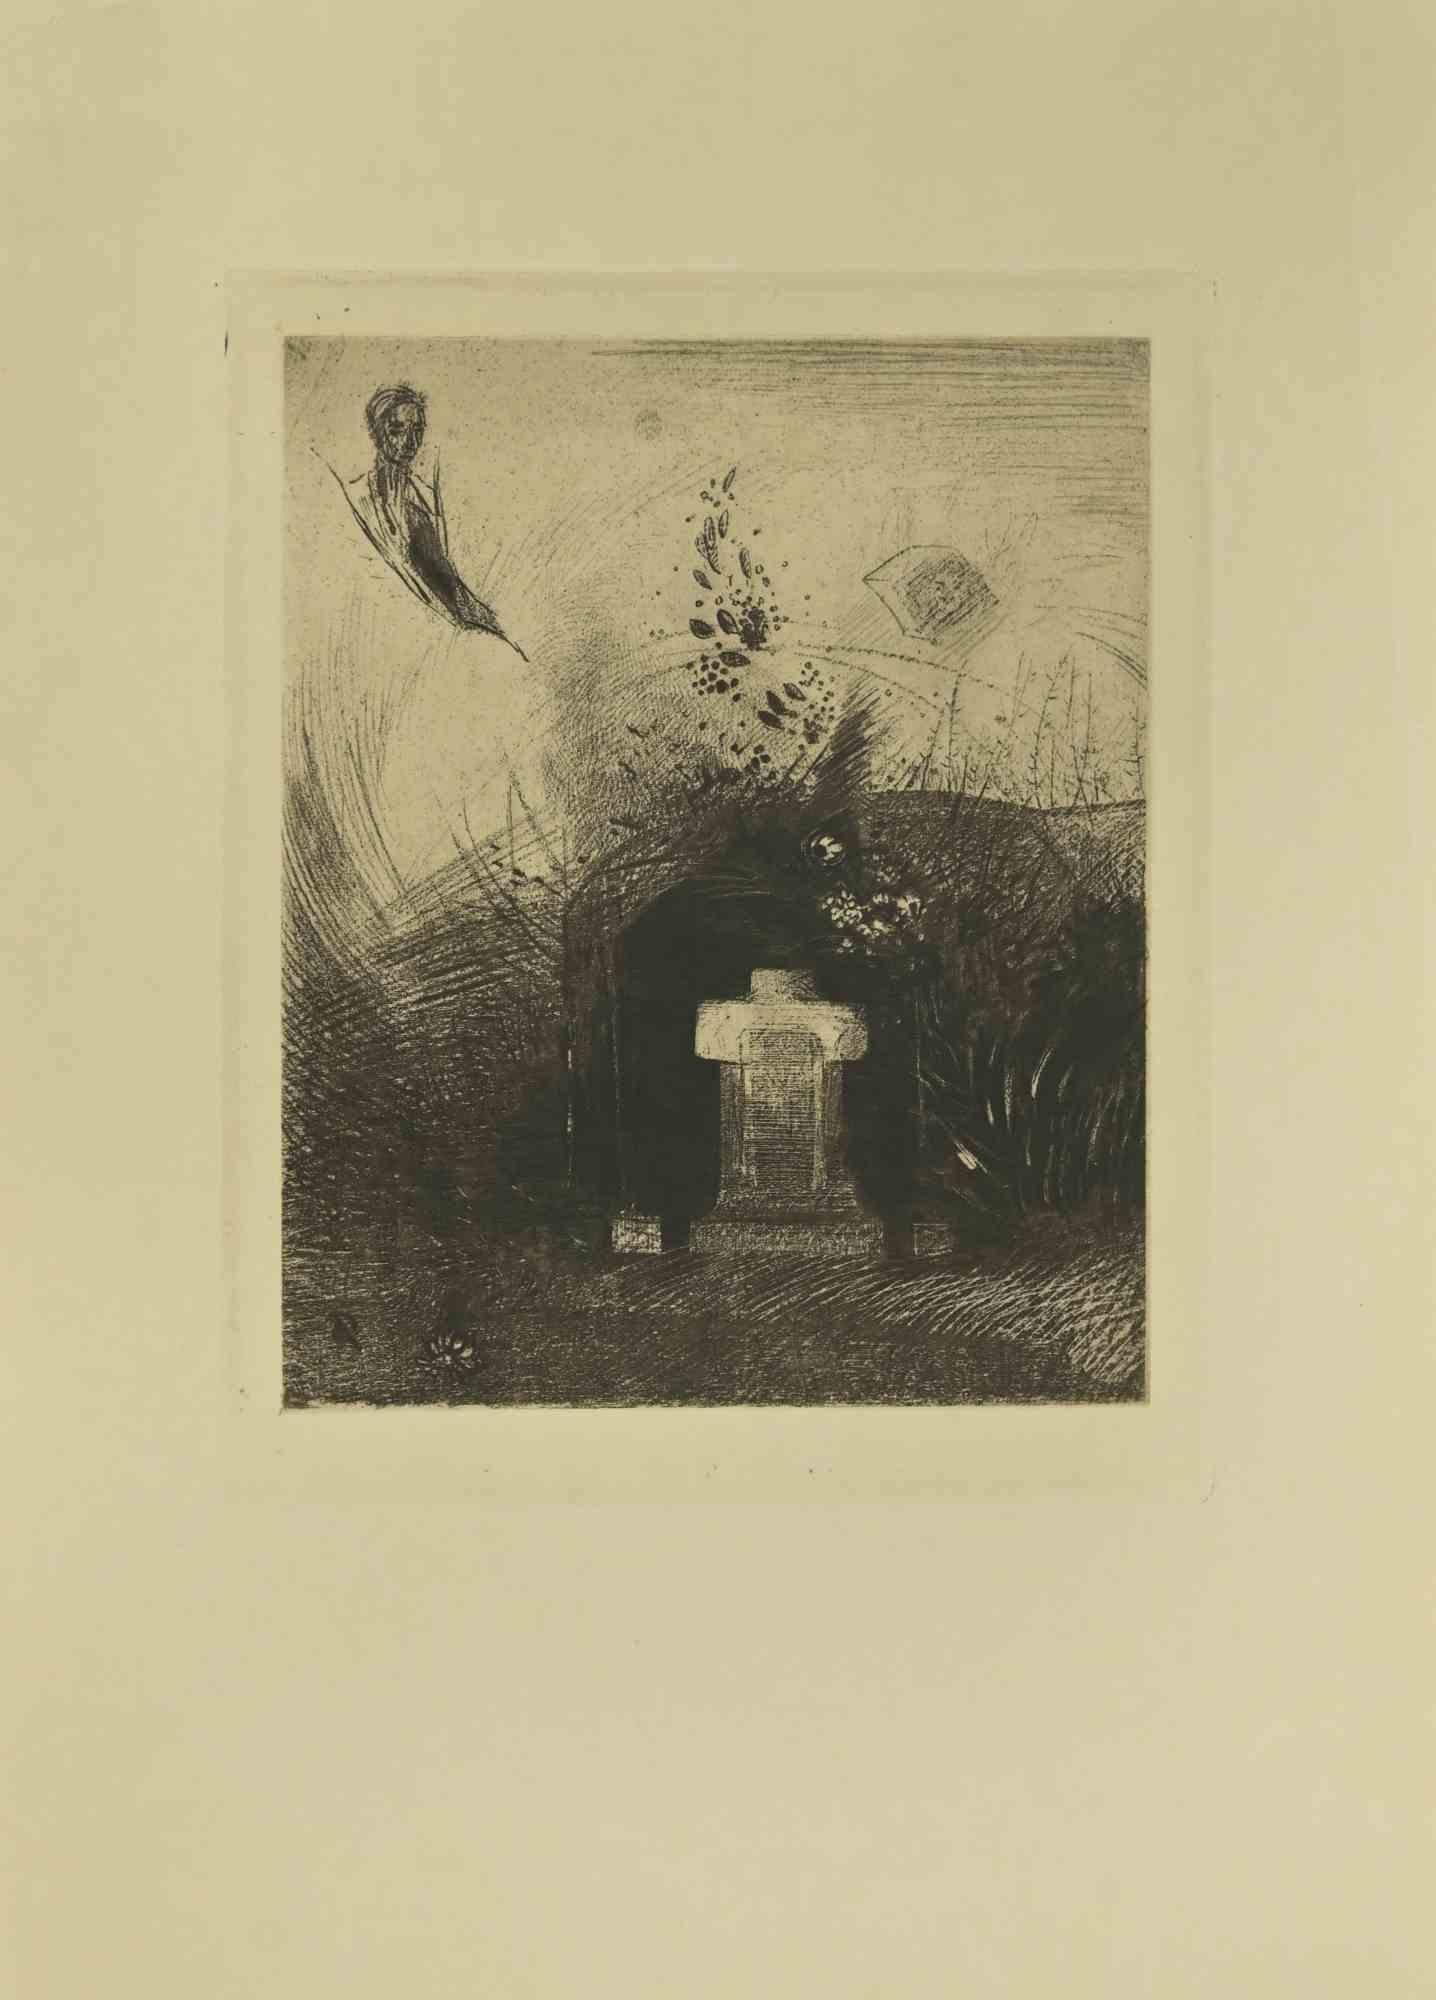 Die Illustration aus der Serie "Les Fleurs du Mal" ist eine Radierung nach Odilon Redon und wurde 1923 von Henri Felury veröffentlicht.

Mit Monogrammen auf dem Teller.

Guter Zustand, mit leichten Falten und Stockflecken an den Rändern.

Odilon